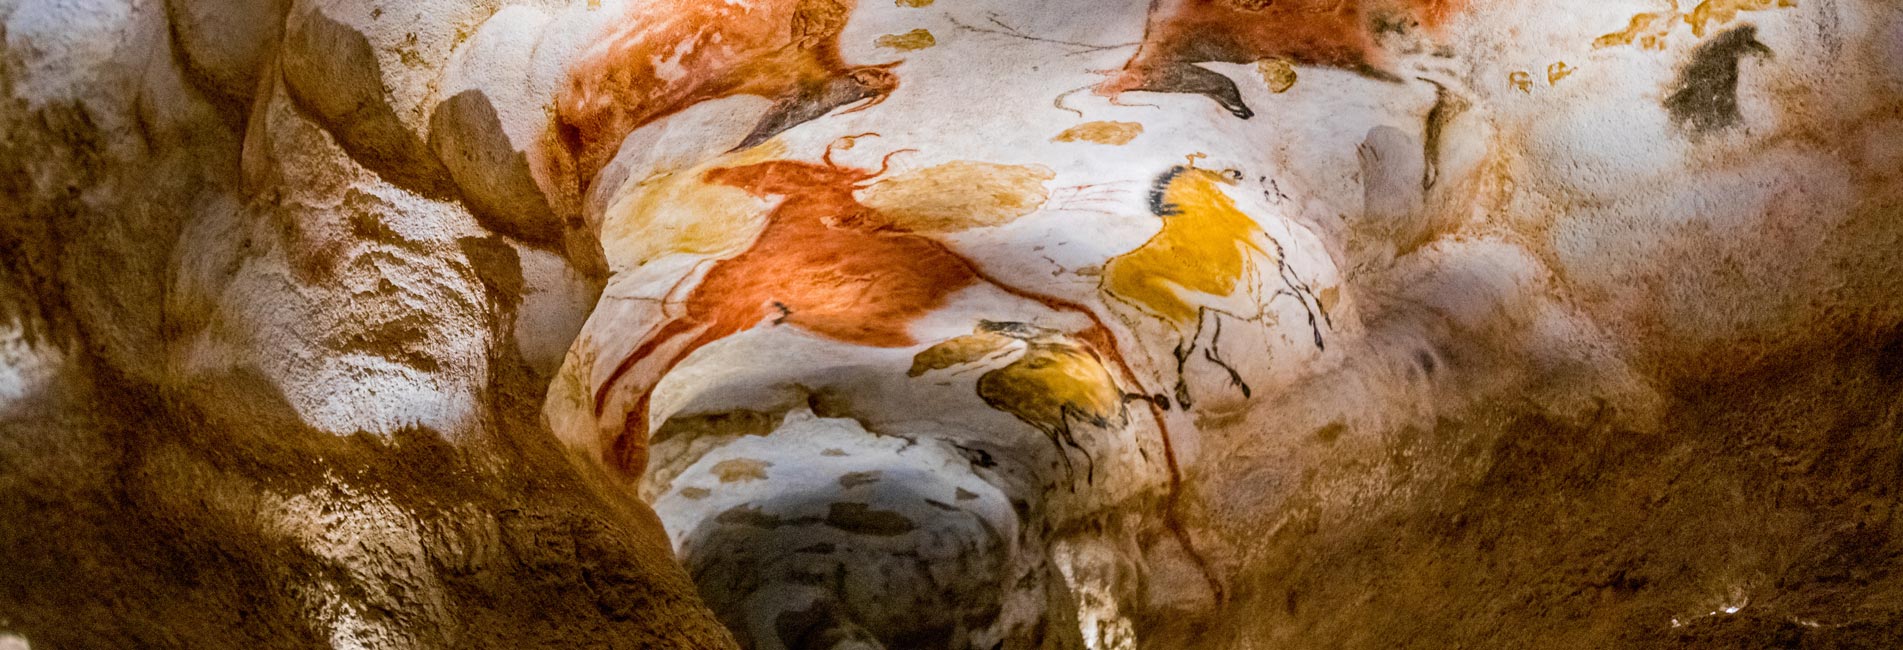 grotte de lascaux dordogne